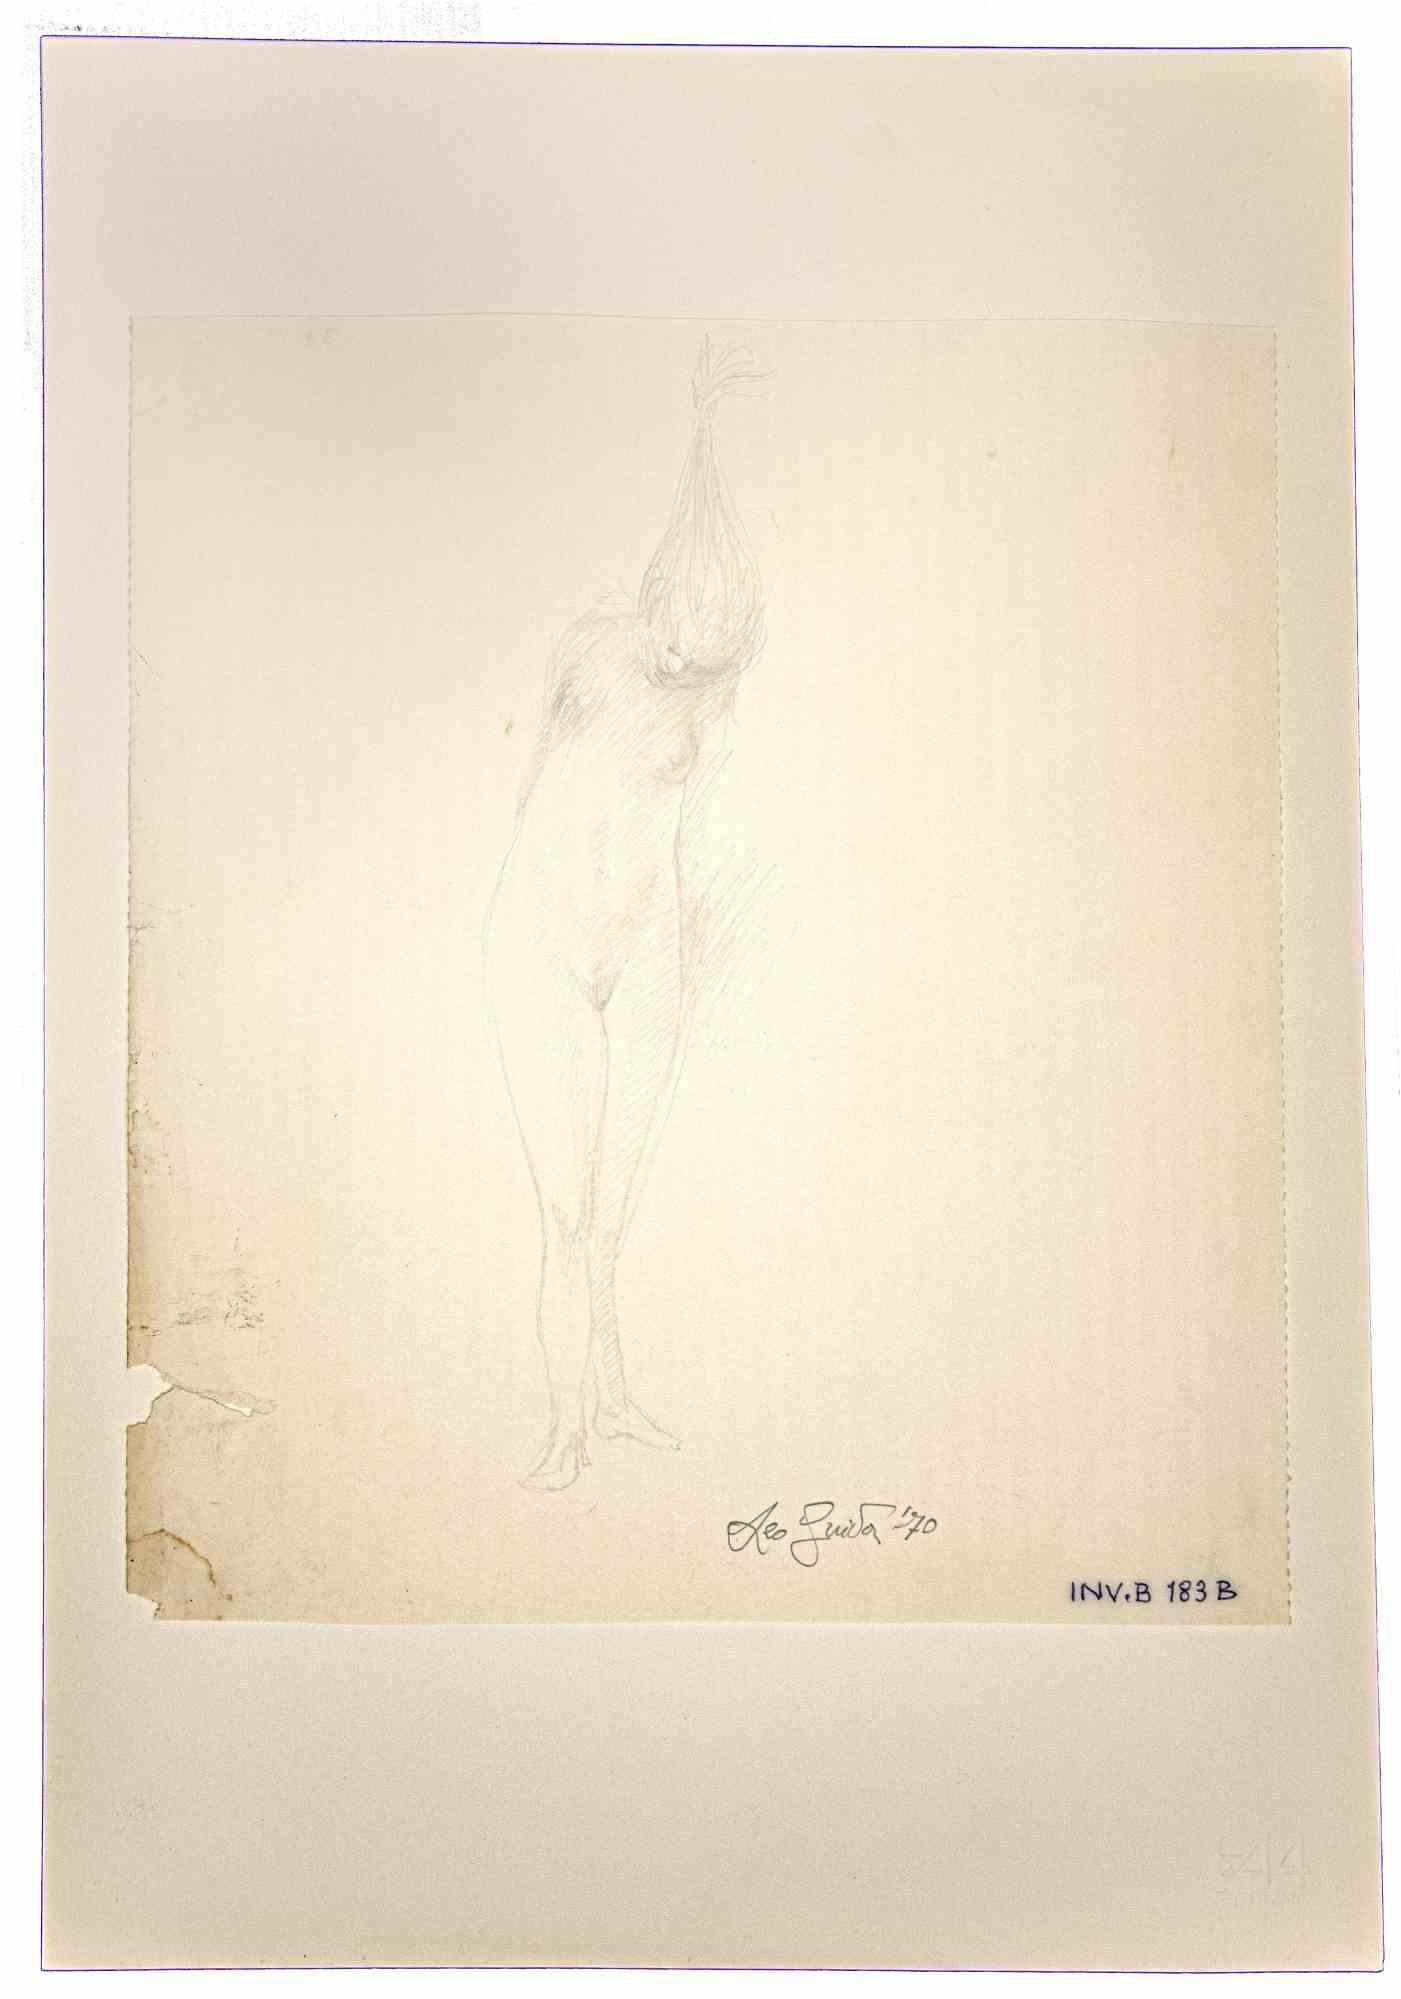 Nudes ist ein originales Kunstwerk  im Jahr 1970 von dem italienischen zeitgenössischen Künstler Leo Guida (1992 - 2017).

Originalzeichnung mit Bleistift auf elfenbeinfarbenem Papier, auf Karton geklebt (50 x 35 cm)
 
Am unteren Rand handsigniert